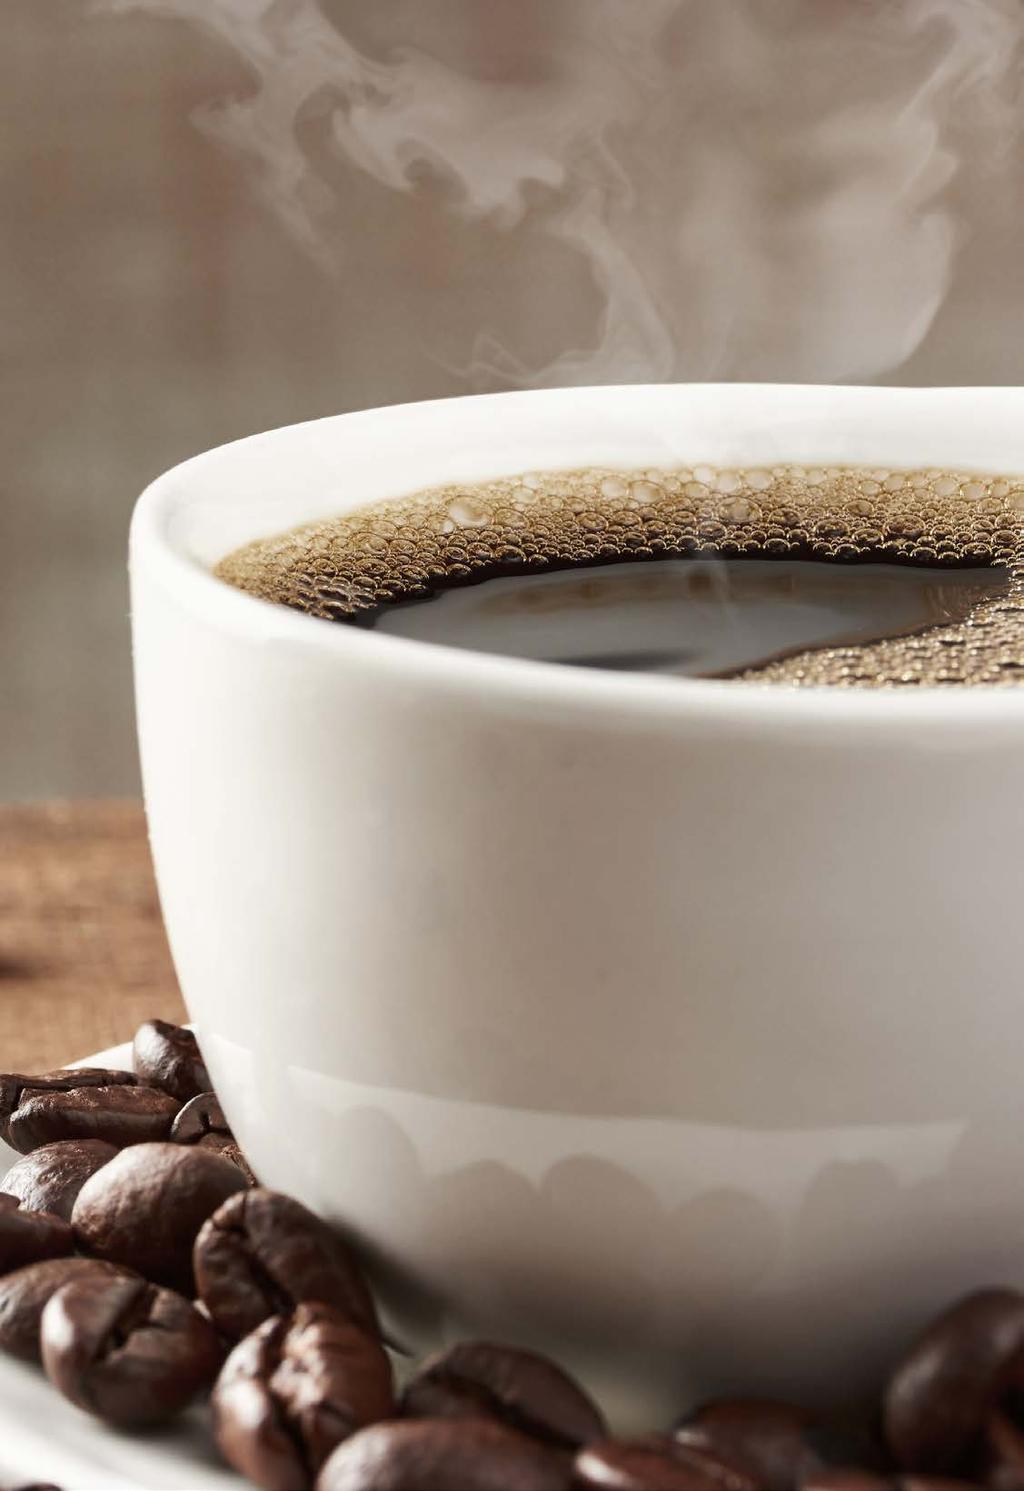 ALI KAFFE Siden lanseringen i 1960 har ALI Kaffe blitt en av de mest kjente og kjære merkevarene på det norske kaffemarkedet.